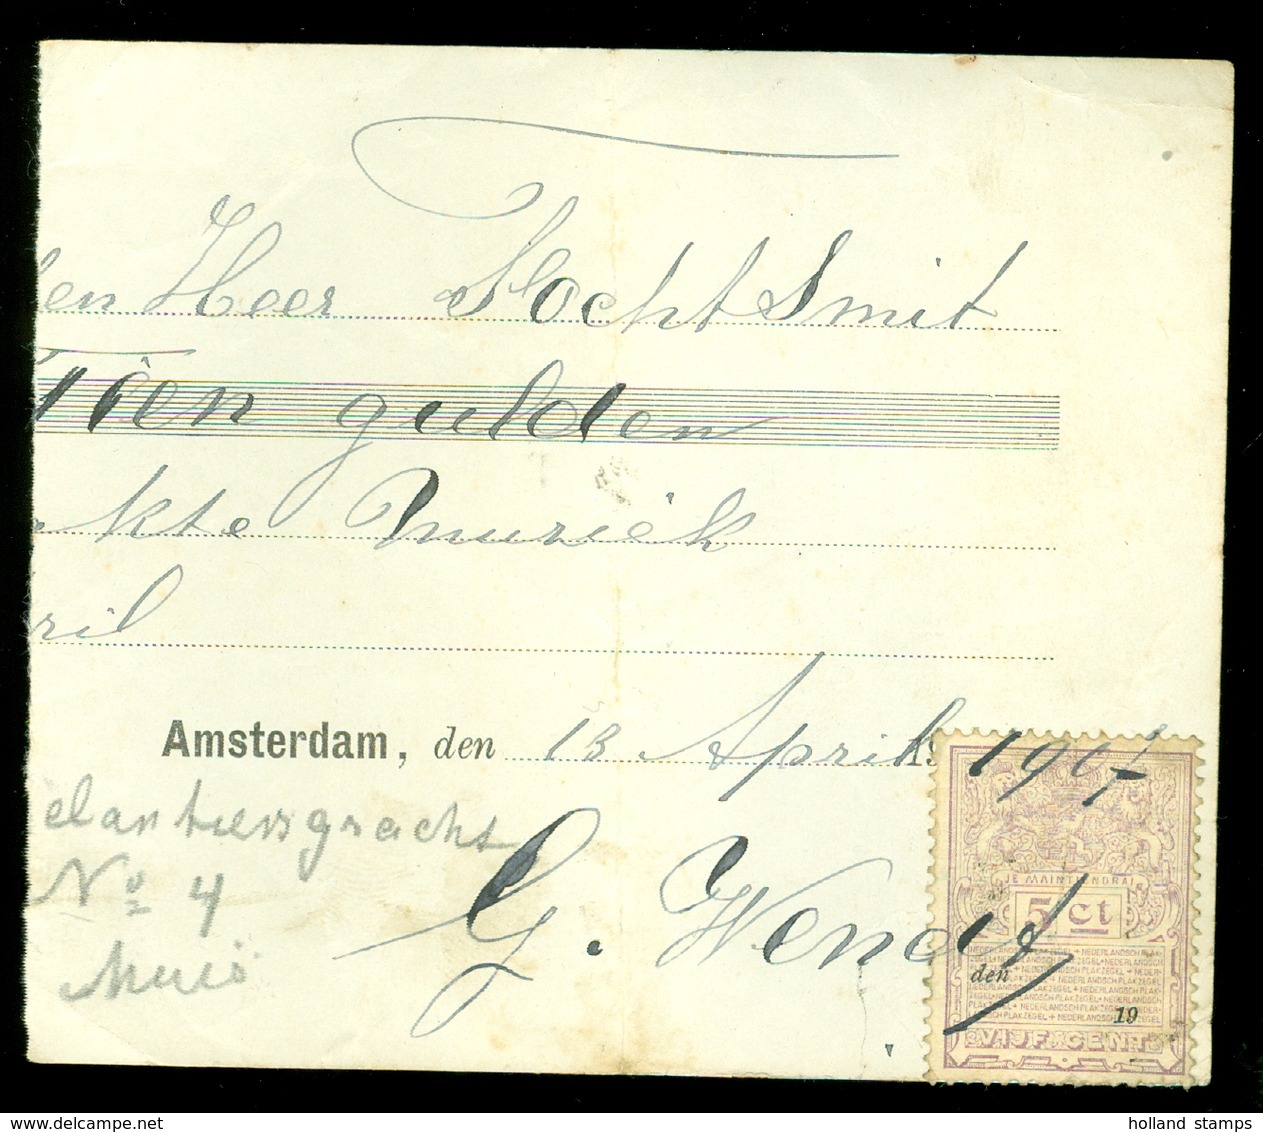 KWITANTIE METBELASTINGZEGEL 5 CENT Uit 1907 EGELANTIERSGRACHT 4 TE AMSTERDAM (11.508r) - Revenue Stamps